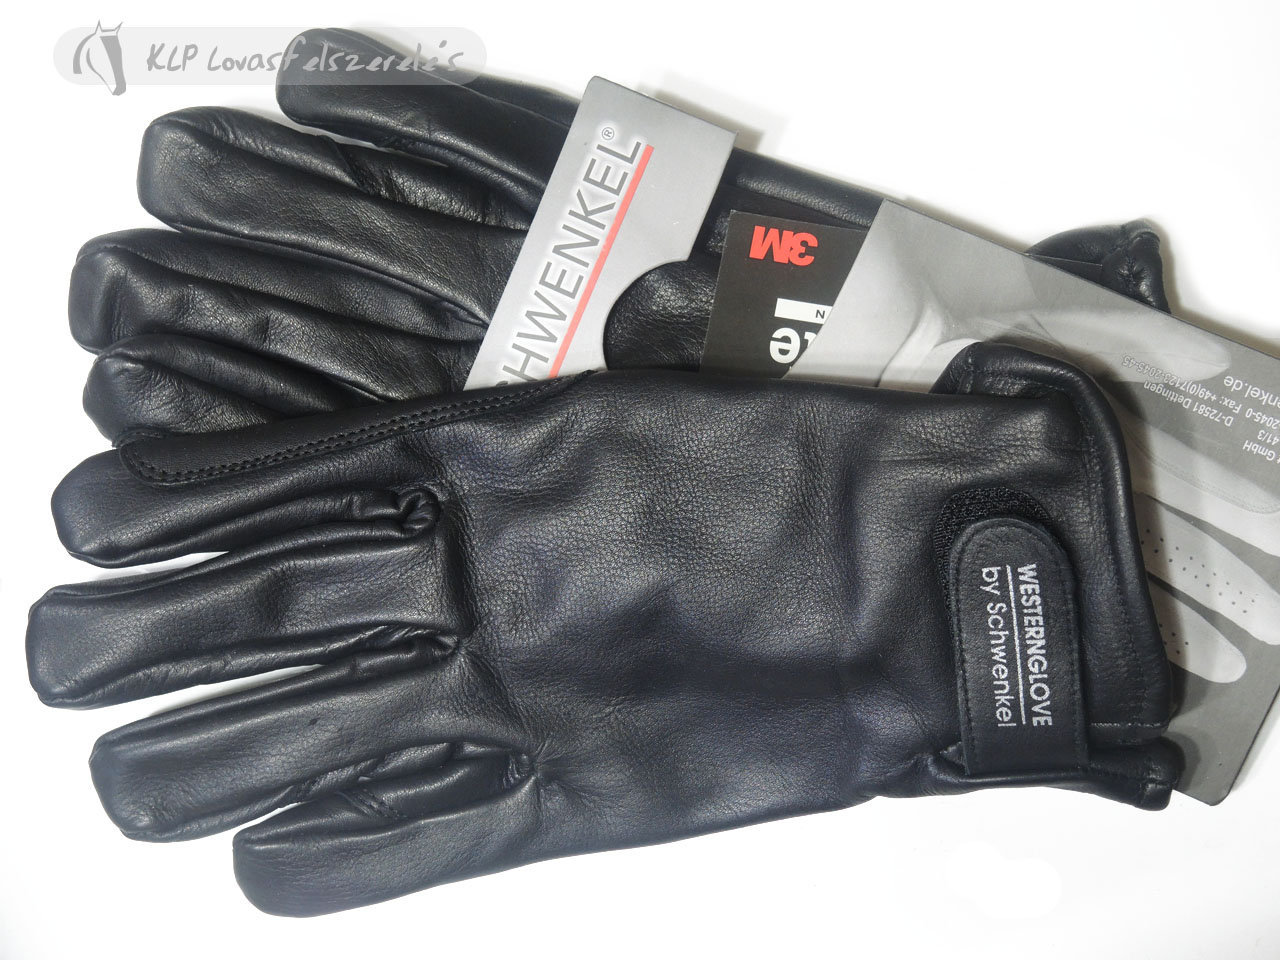 Schwenkel Winter Leather Riding Gloves